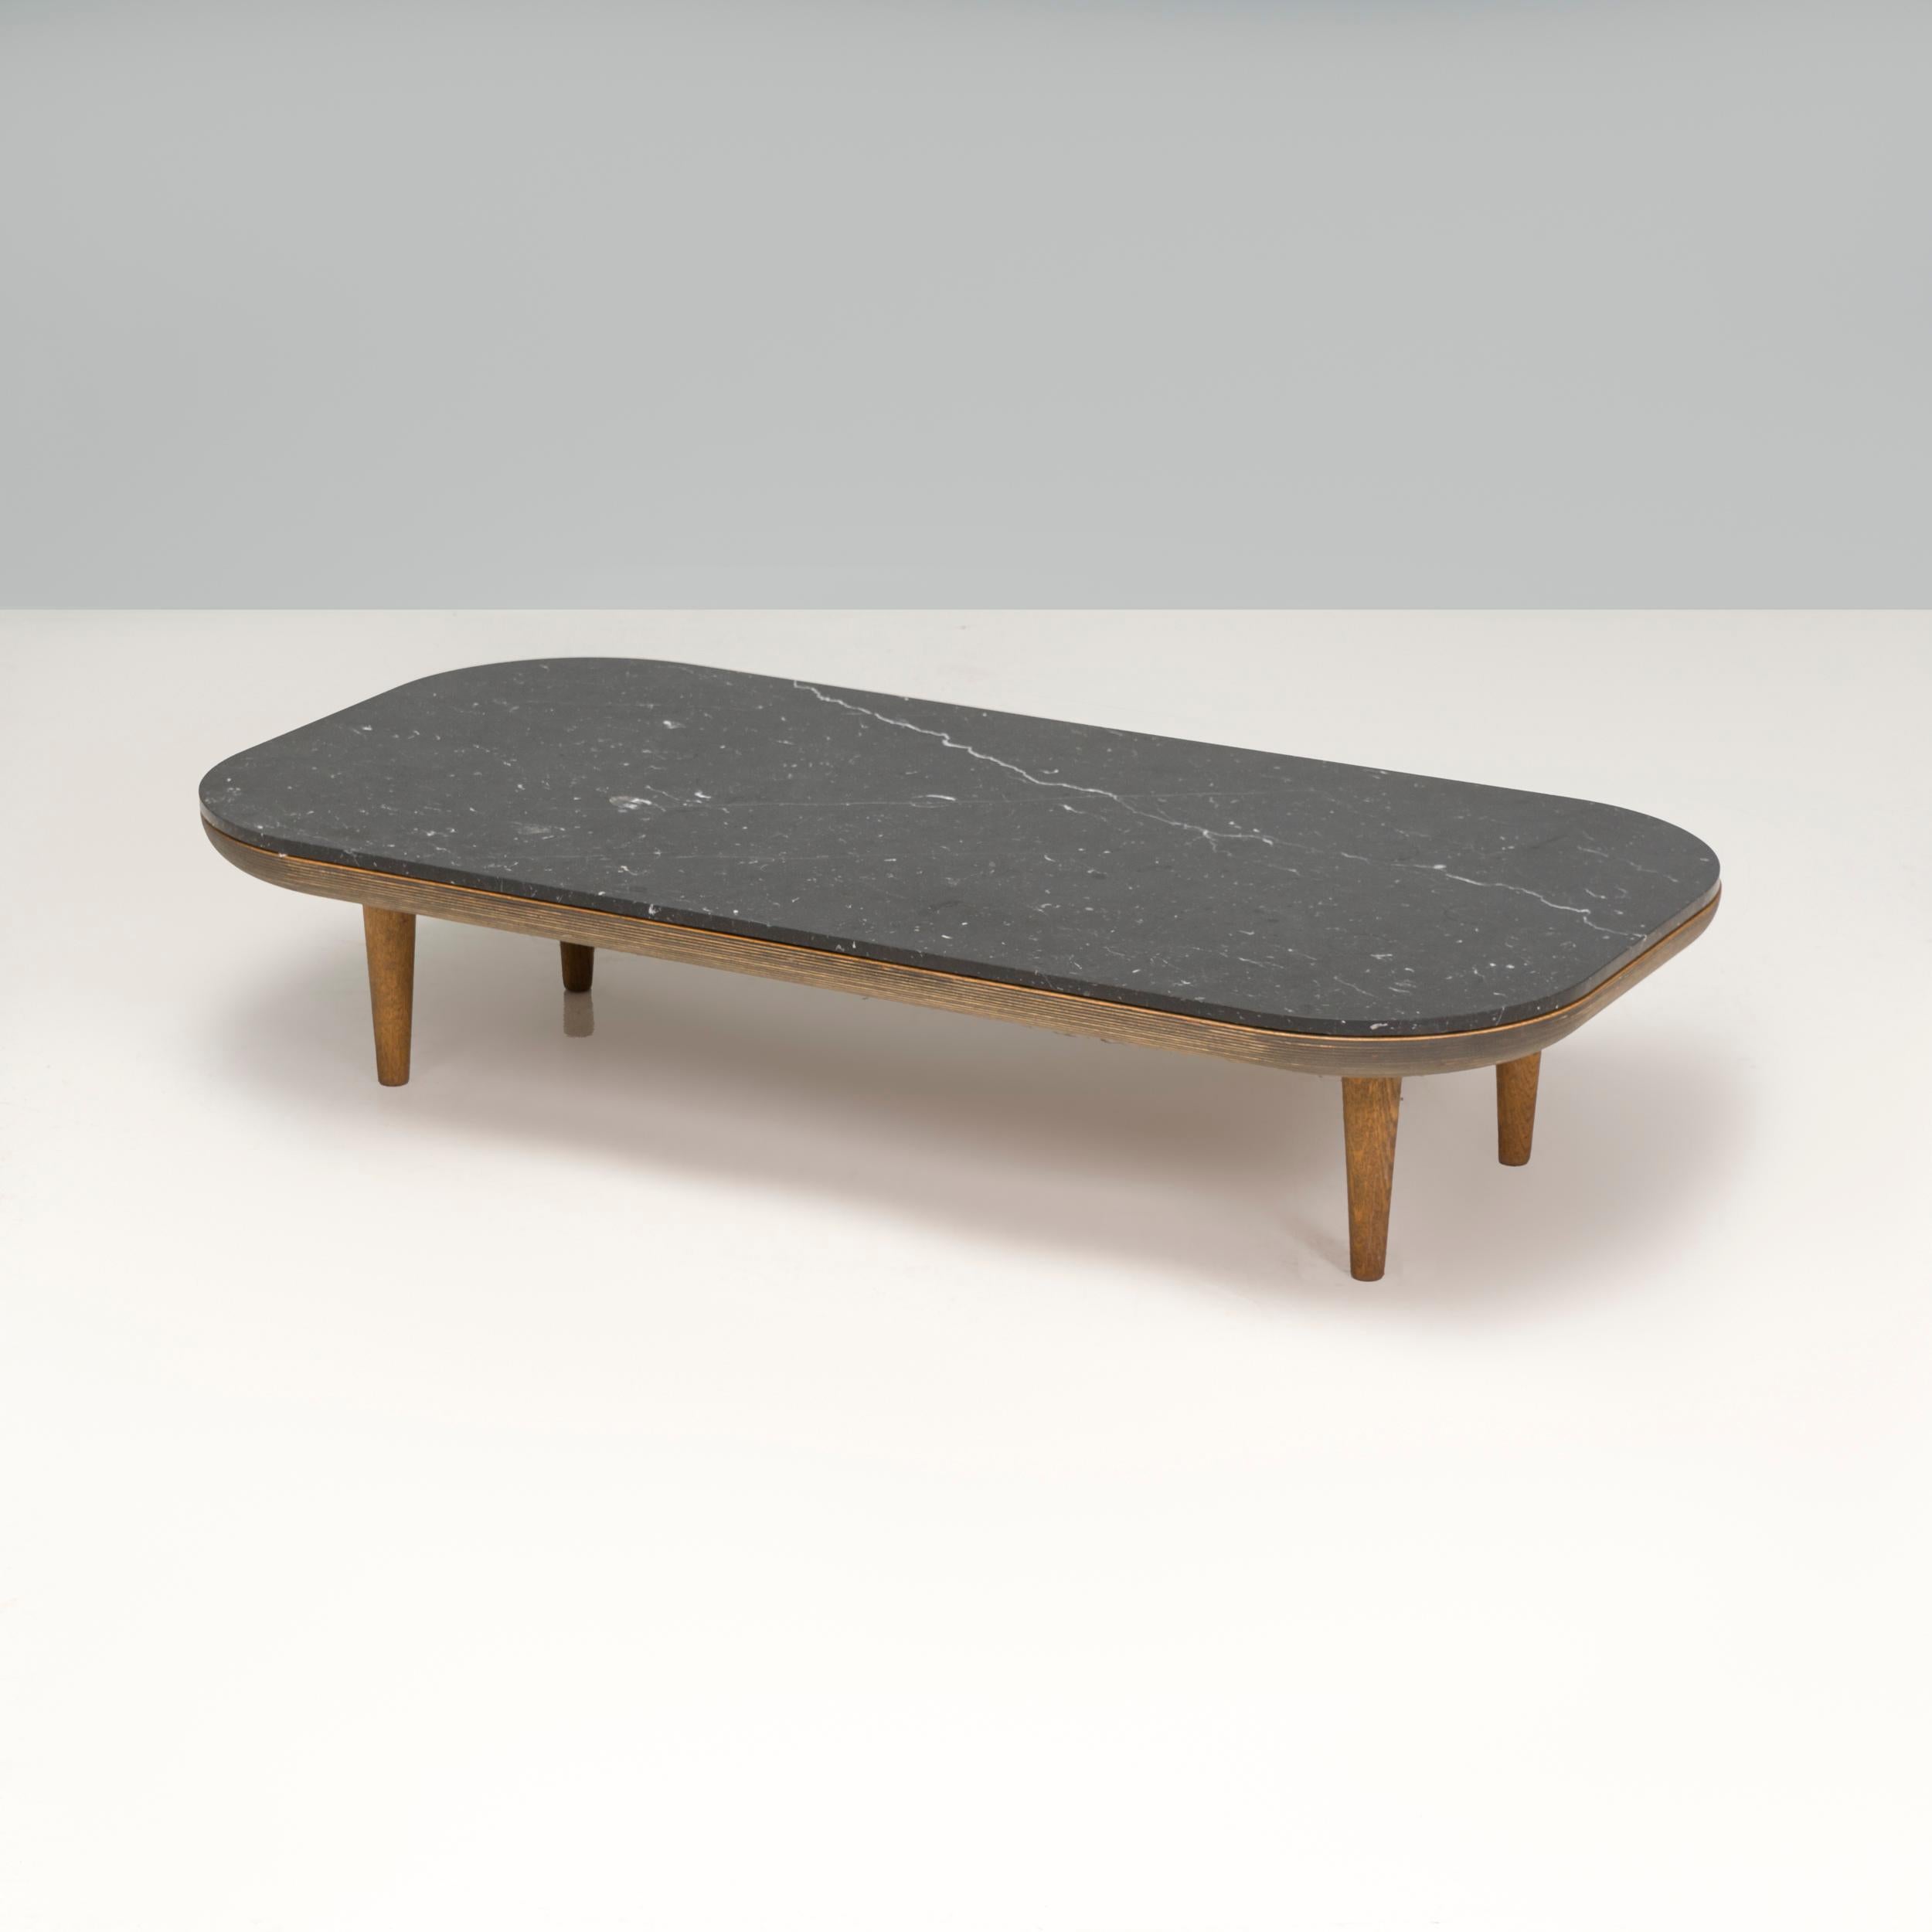 Cette table basse danoise fait partie de la FLY Series by SPACE Copenhagen lounge collection visant à faire évoluer l'idée de se prélasser à son plein potentiel. D'un design fin et raffiné, cette table de salon compacte est parfaite pour les espaces